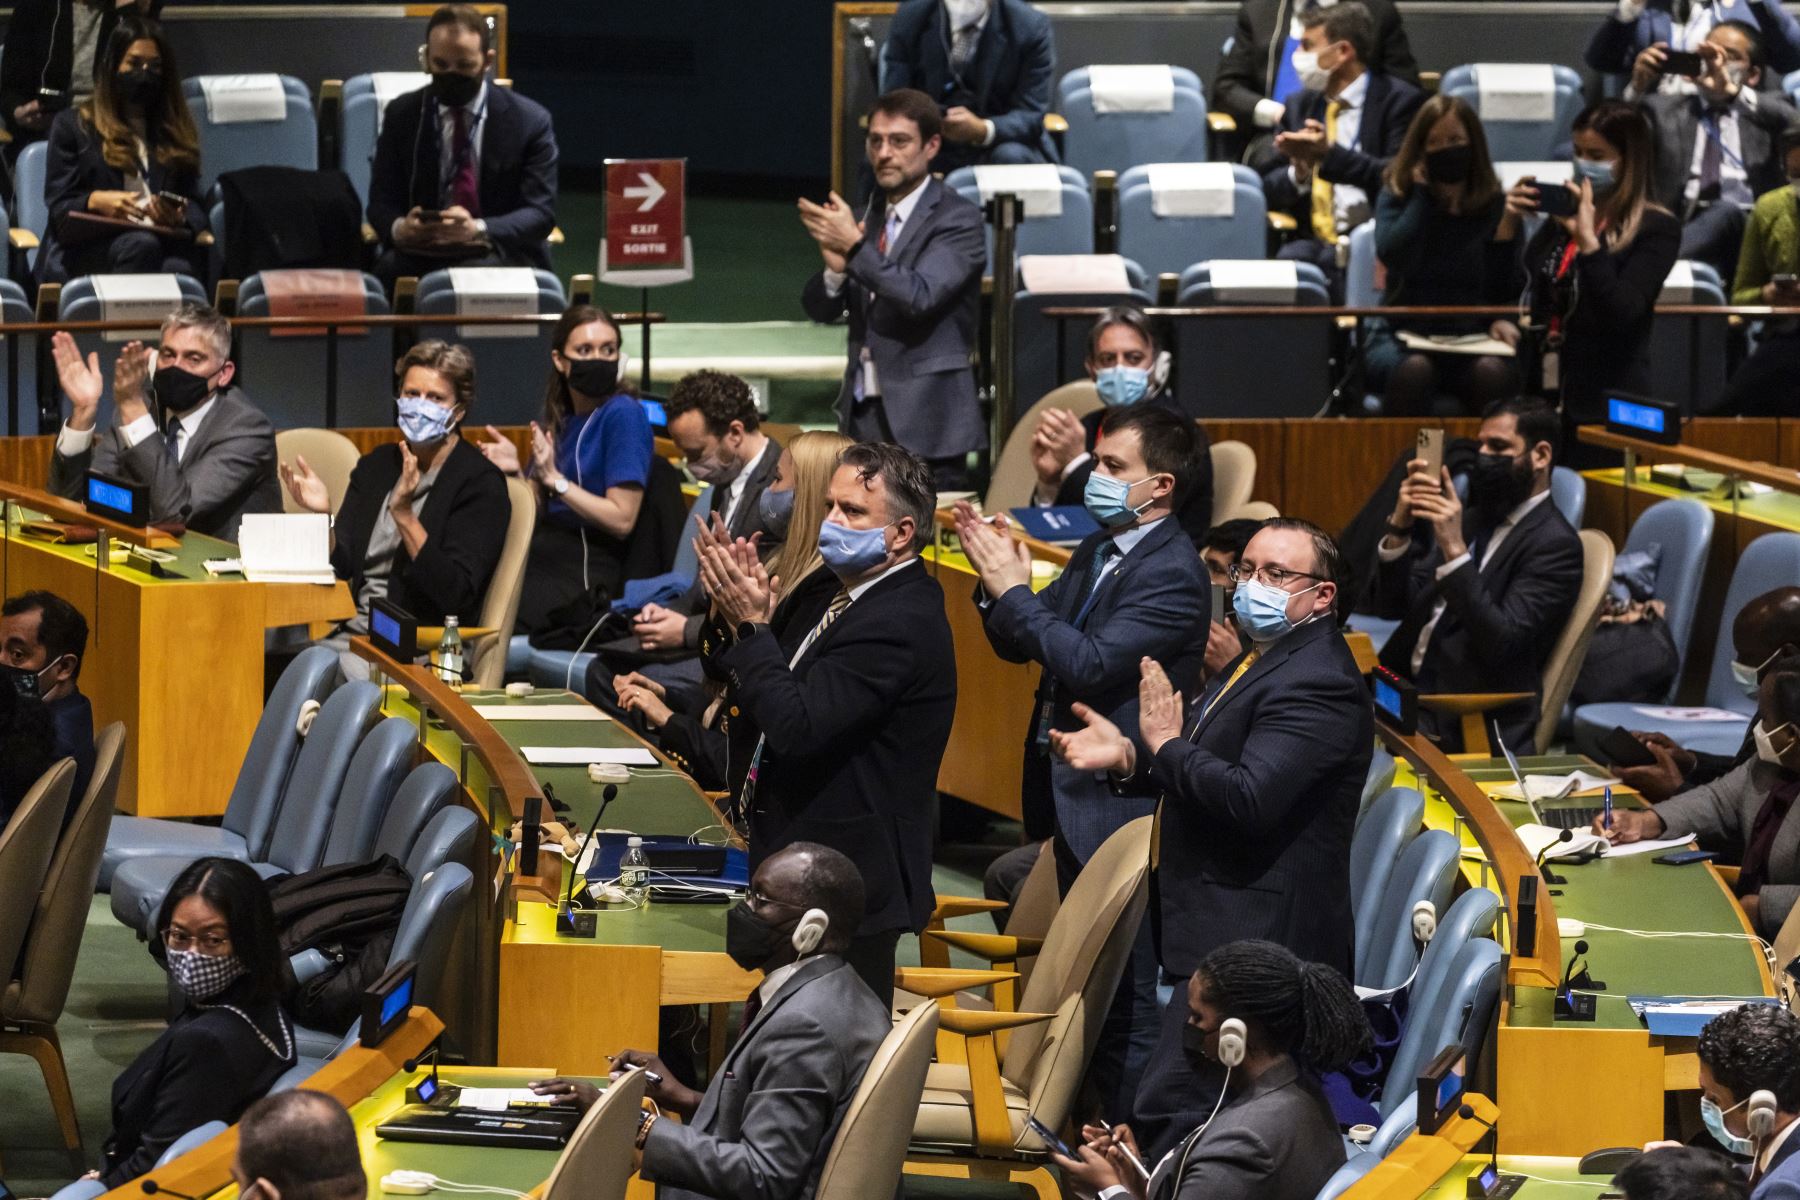 El Embajador de Ucrania ante las Naciones Unidas, Sergiy Kyslytsya , aplaude después de que se aprobara una resolución que condenaba la invasión de Rusia a Ucrania durante el 11º período extraordinario de sesiones de emergencia de la Asamblea General de las Naciones Unidas.
Foto: EFE